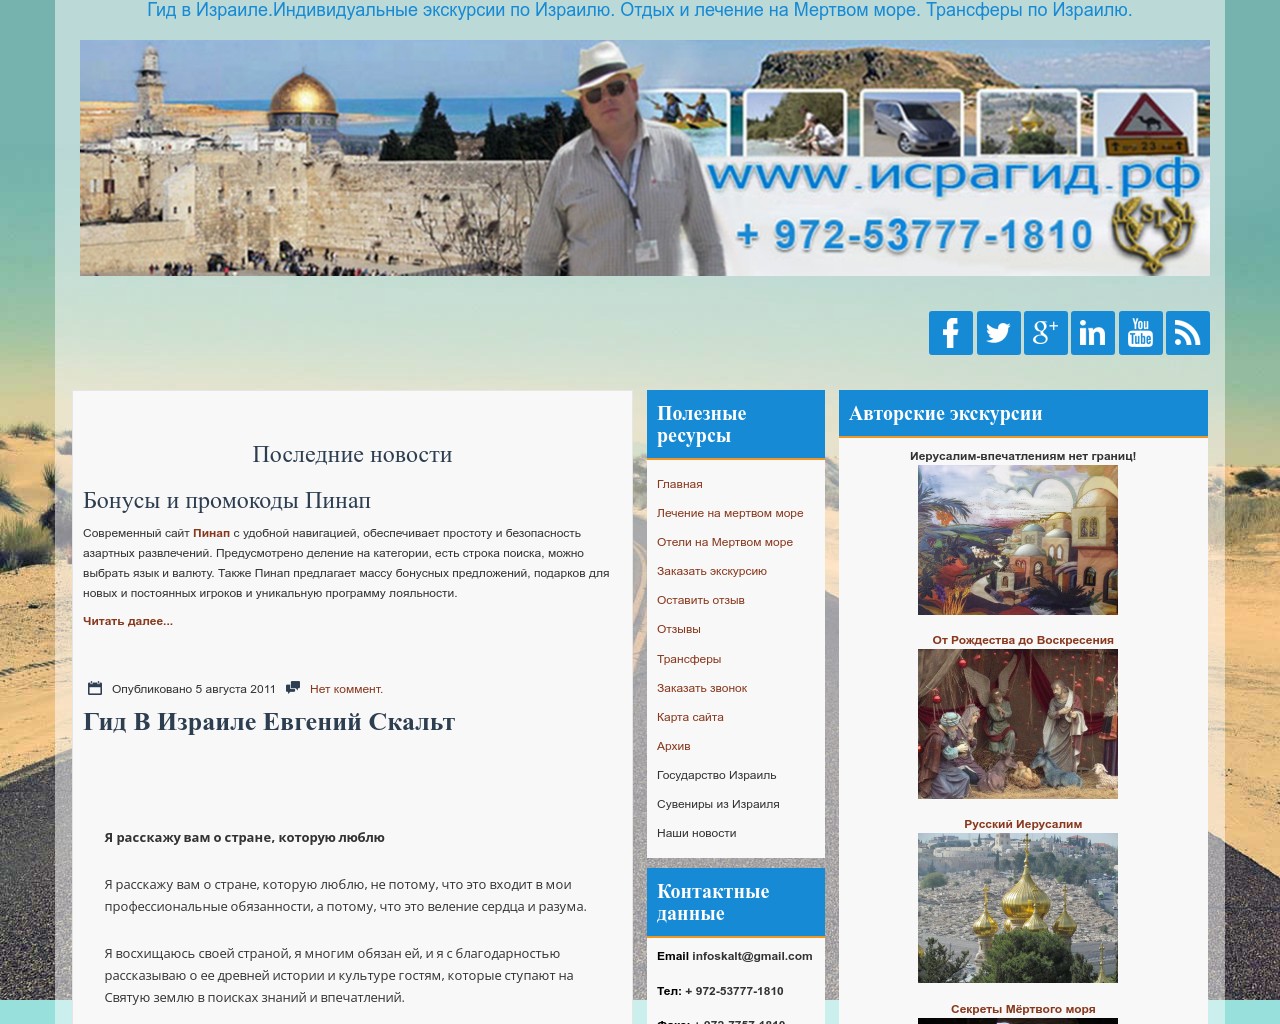 Изображение скриншота сайта - Гид в Израиле со своим авто Индивидуальные экскурсии